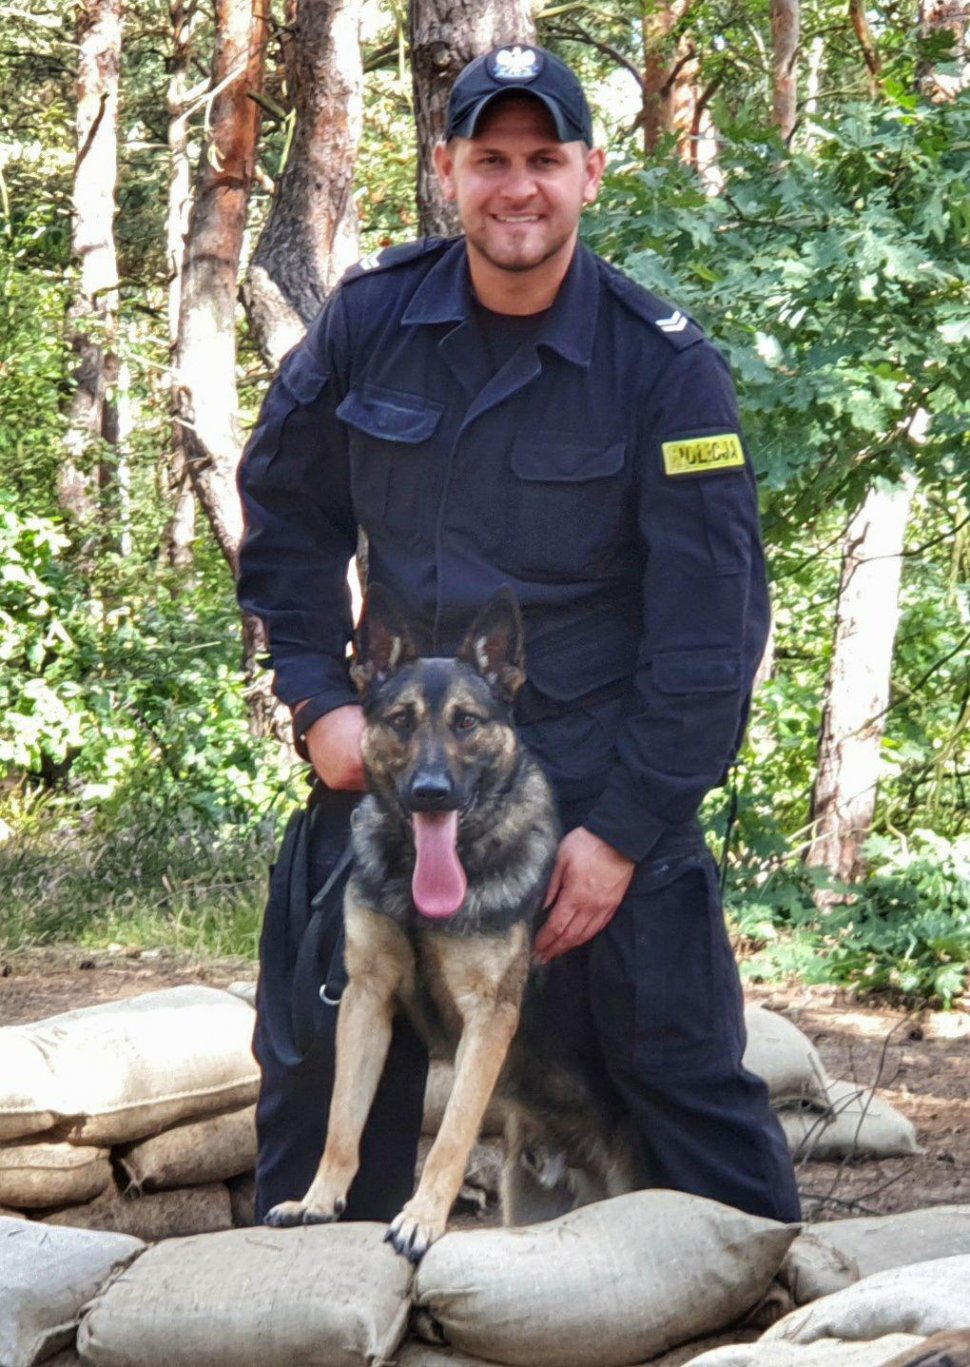 Na zdjęciu widać st. sierż. Kamila Kubicę, który trzyma na smyczy psa patrolowo-tropiącego. Policjant i pies znajdują się w okopie z workami piachu. 